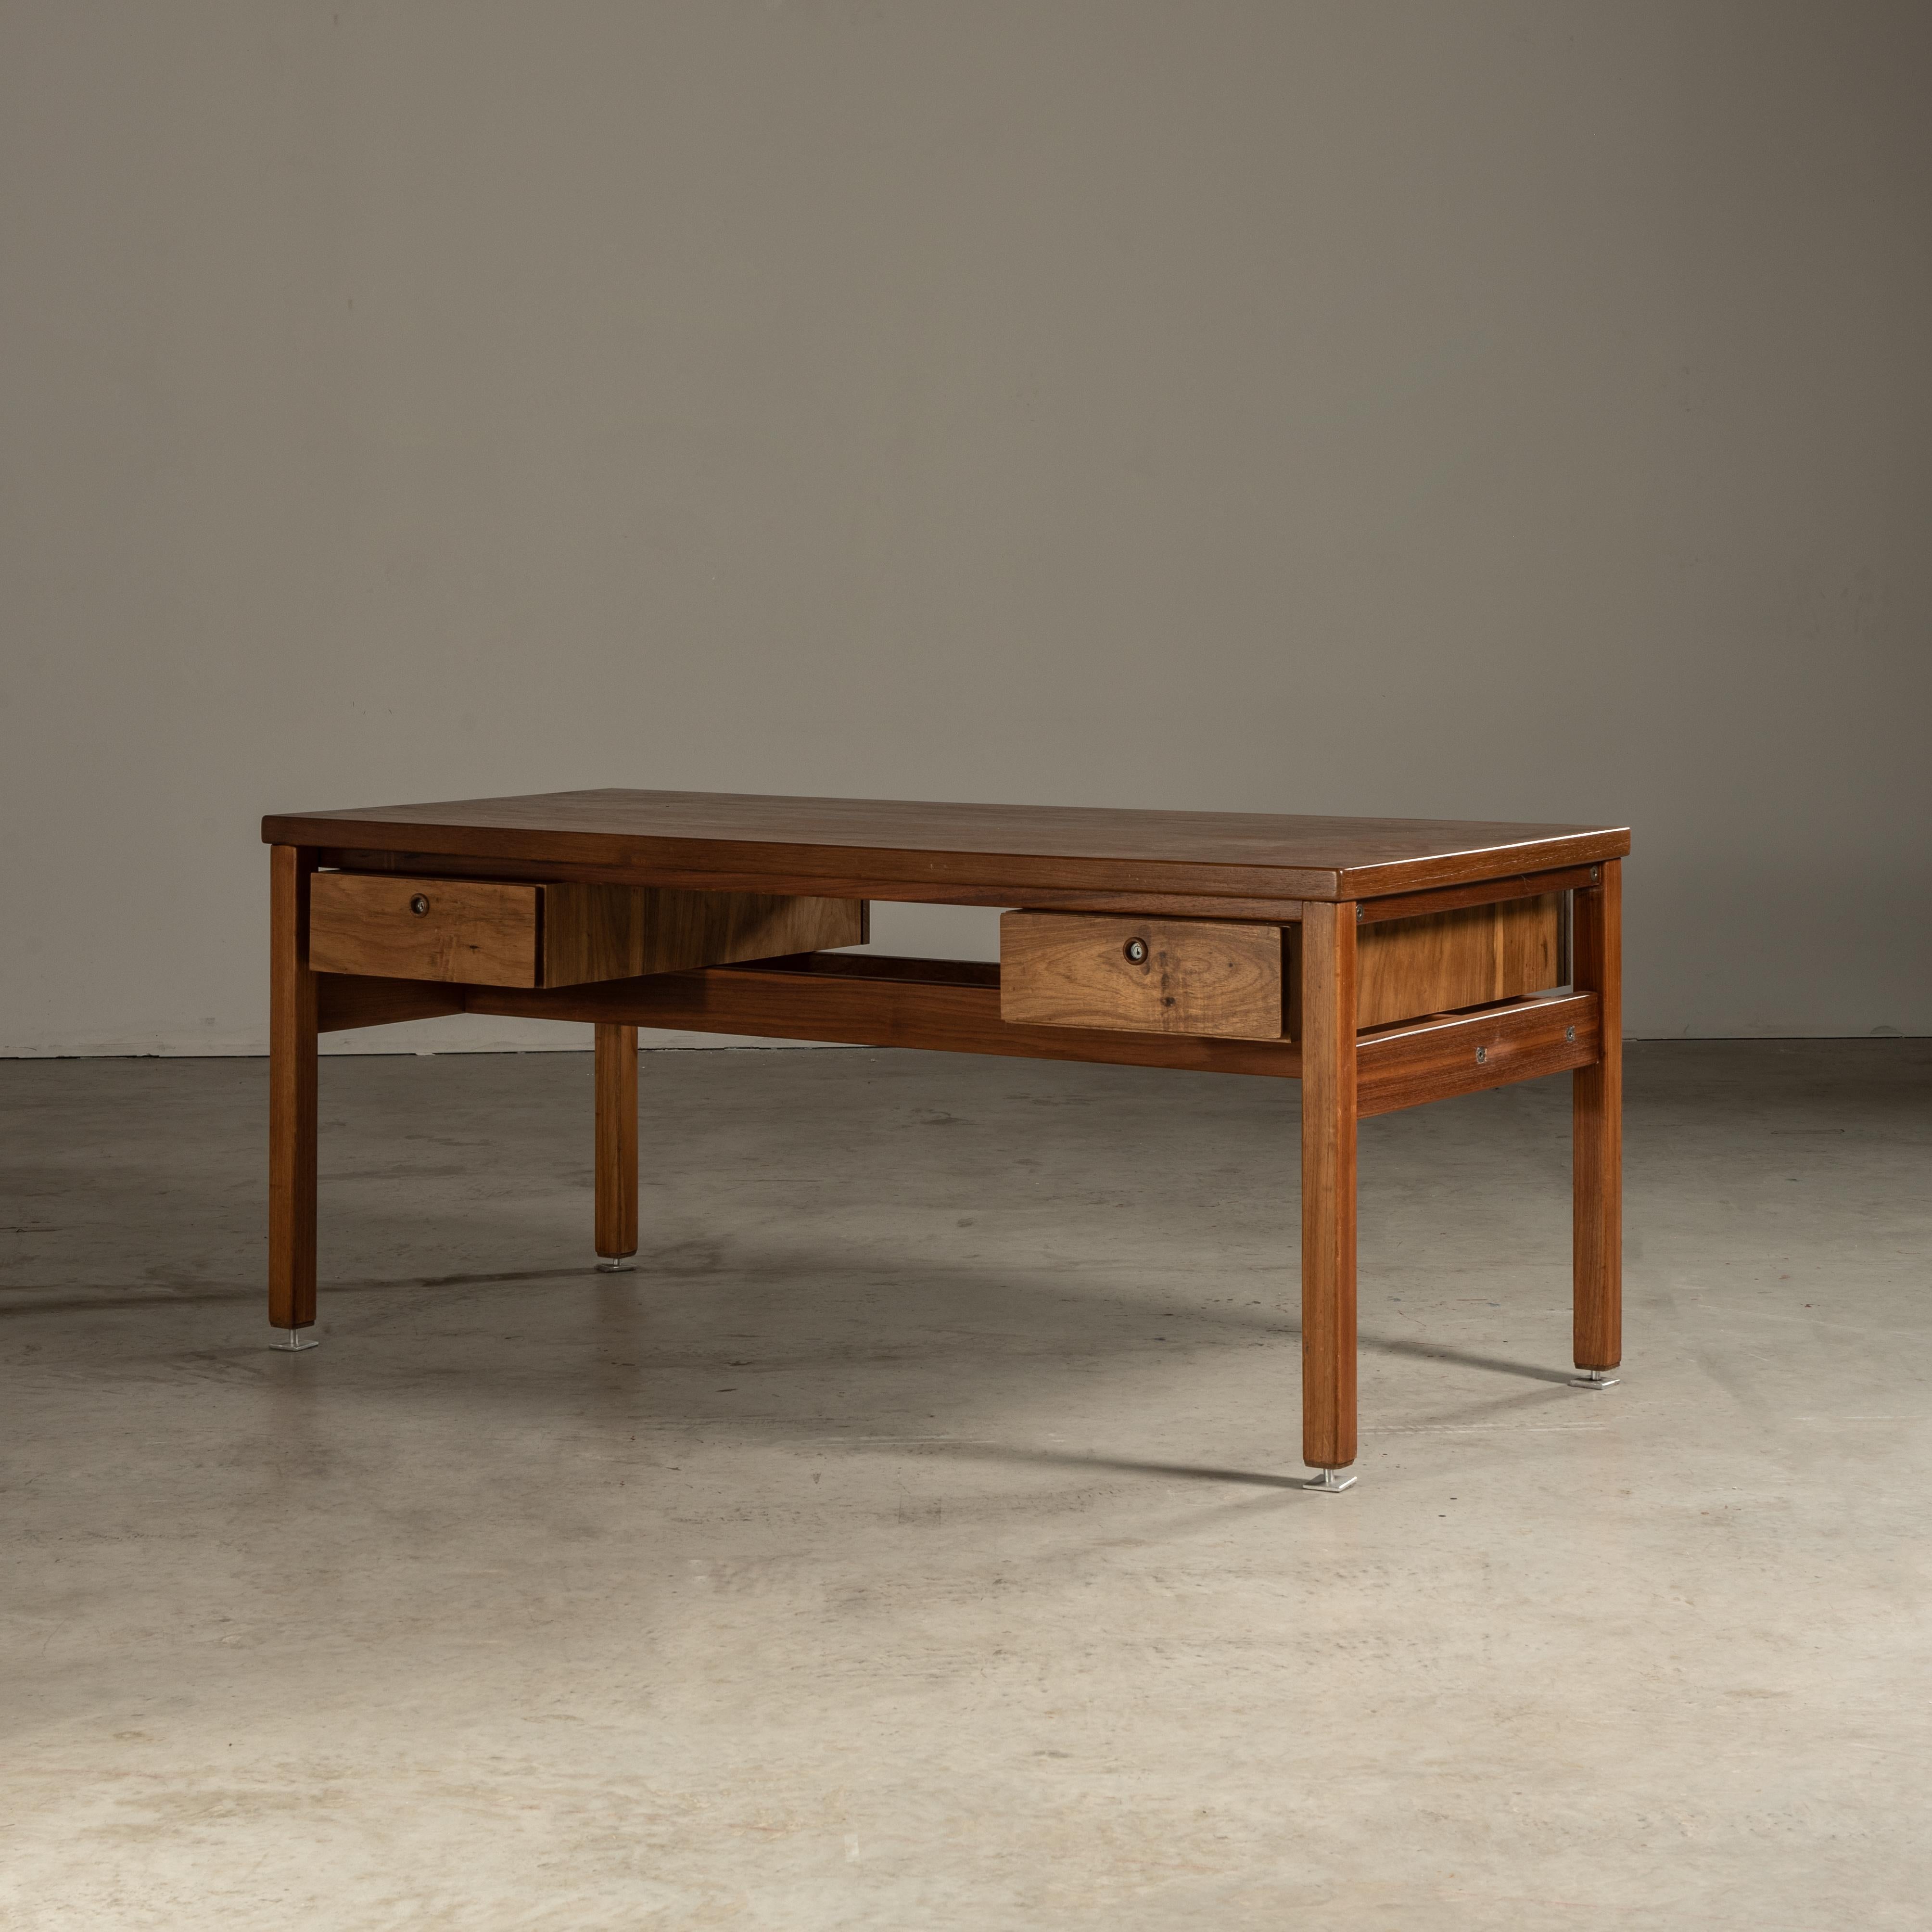 Ce bureau d'appoint est un meuble brésilien du milieu du XXe siècle conçu par Sergio Rodrigues, fabriqué en bois de Freijó. Le Freijó est un type de bois souvent utilisé dans les meubles brésiliens pour la beauté de son grain et sa couleur chaude.